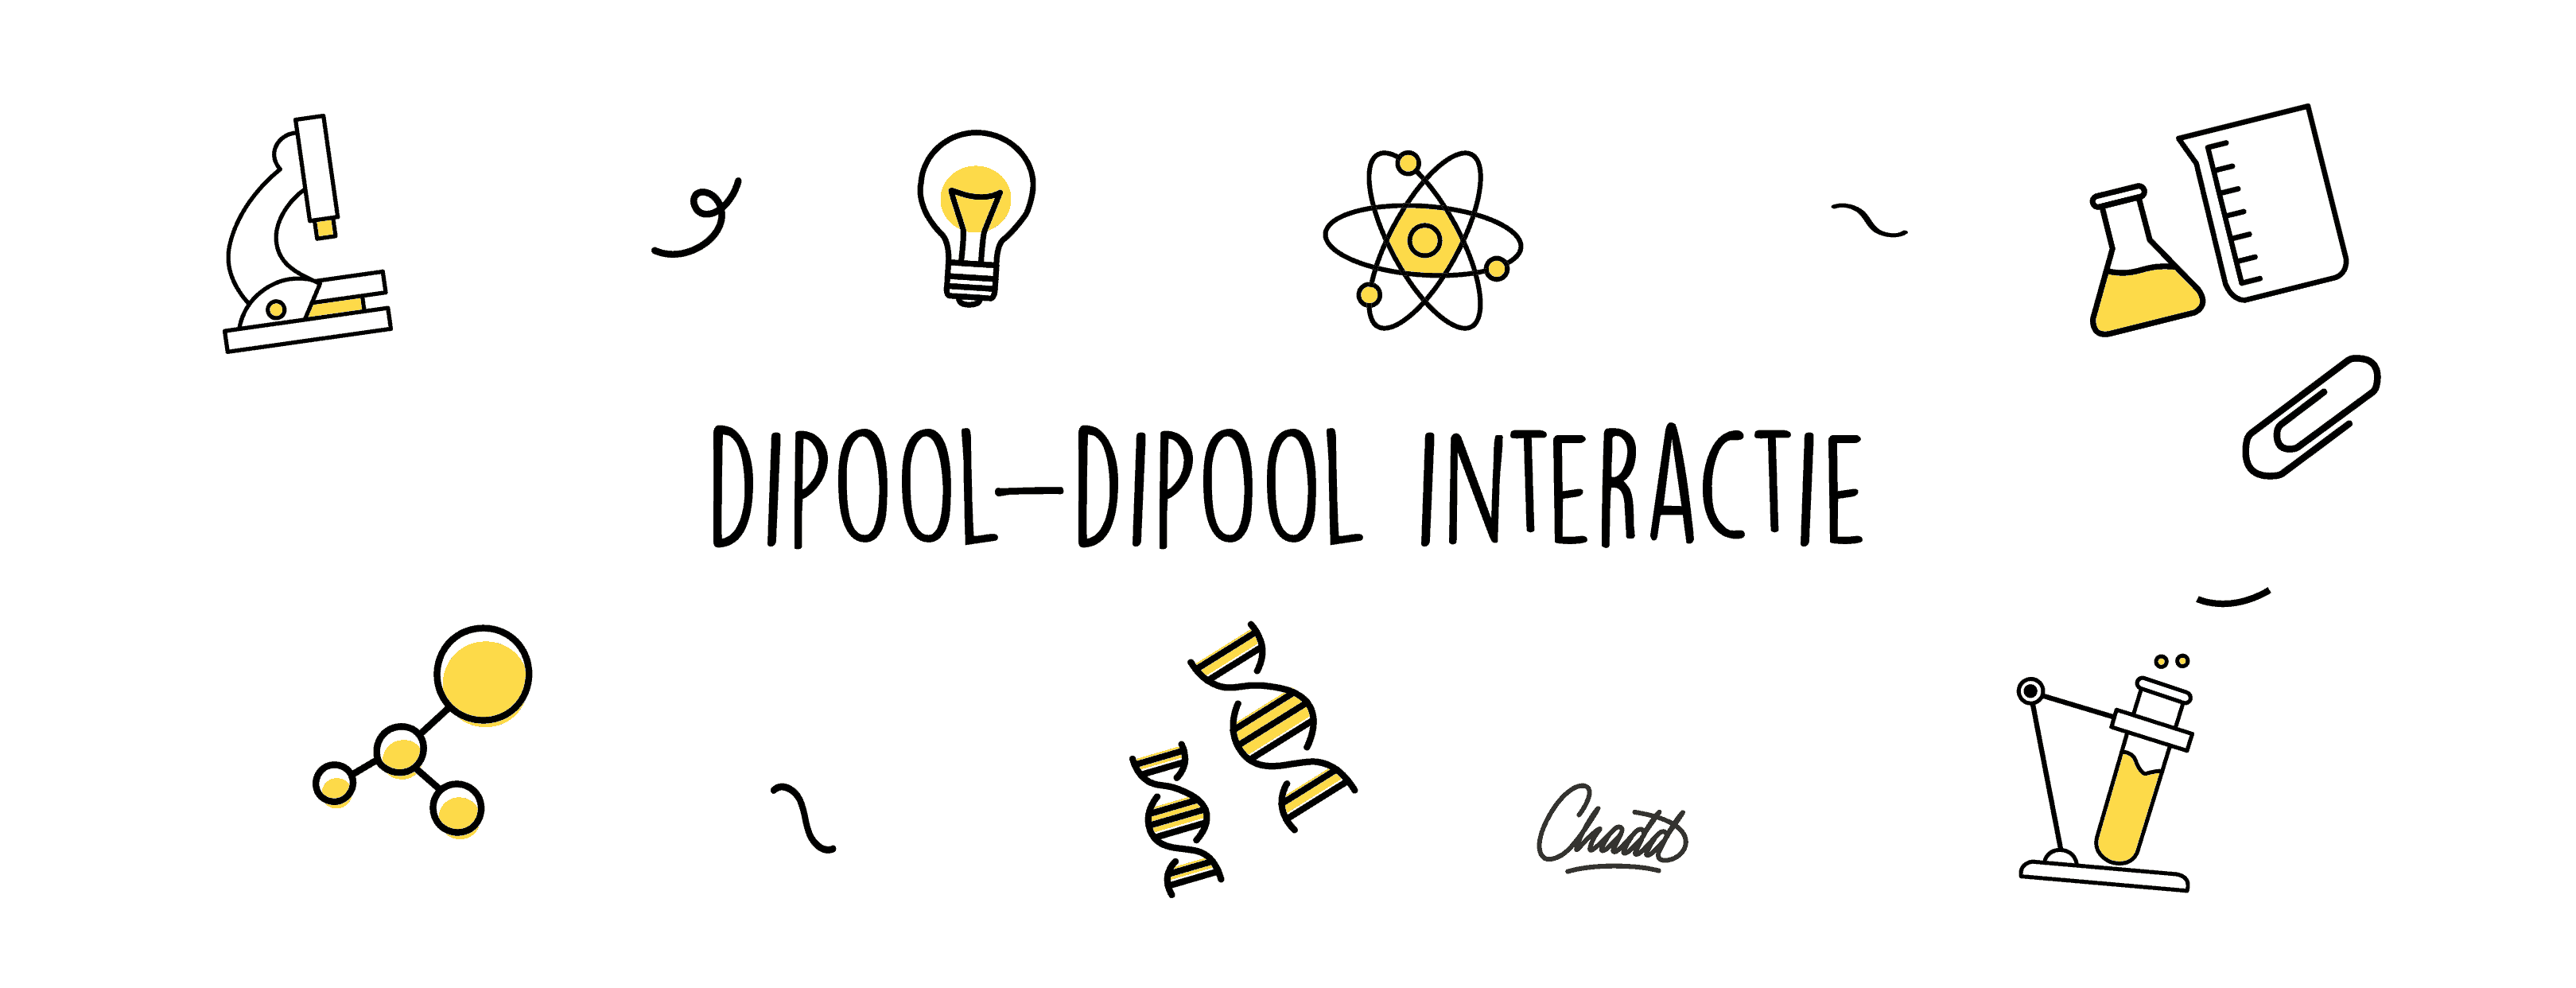 dipool dipool